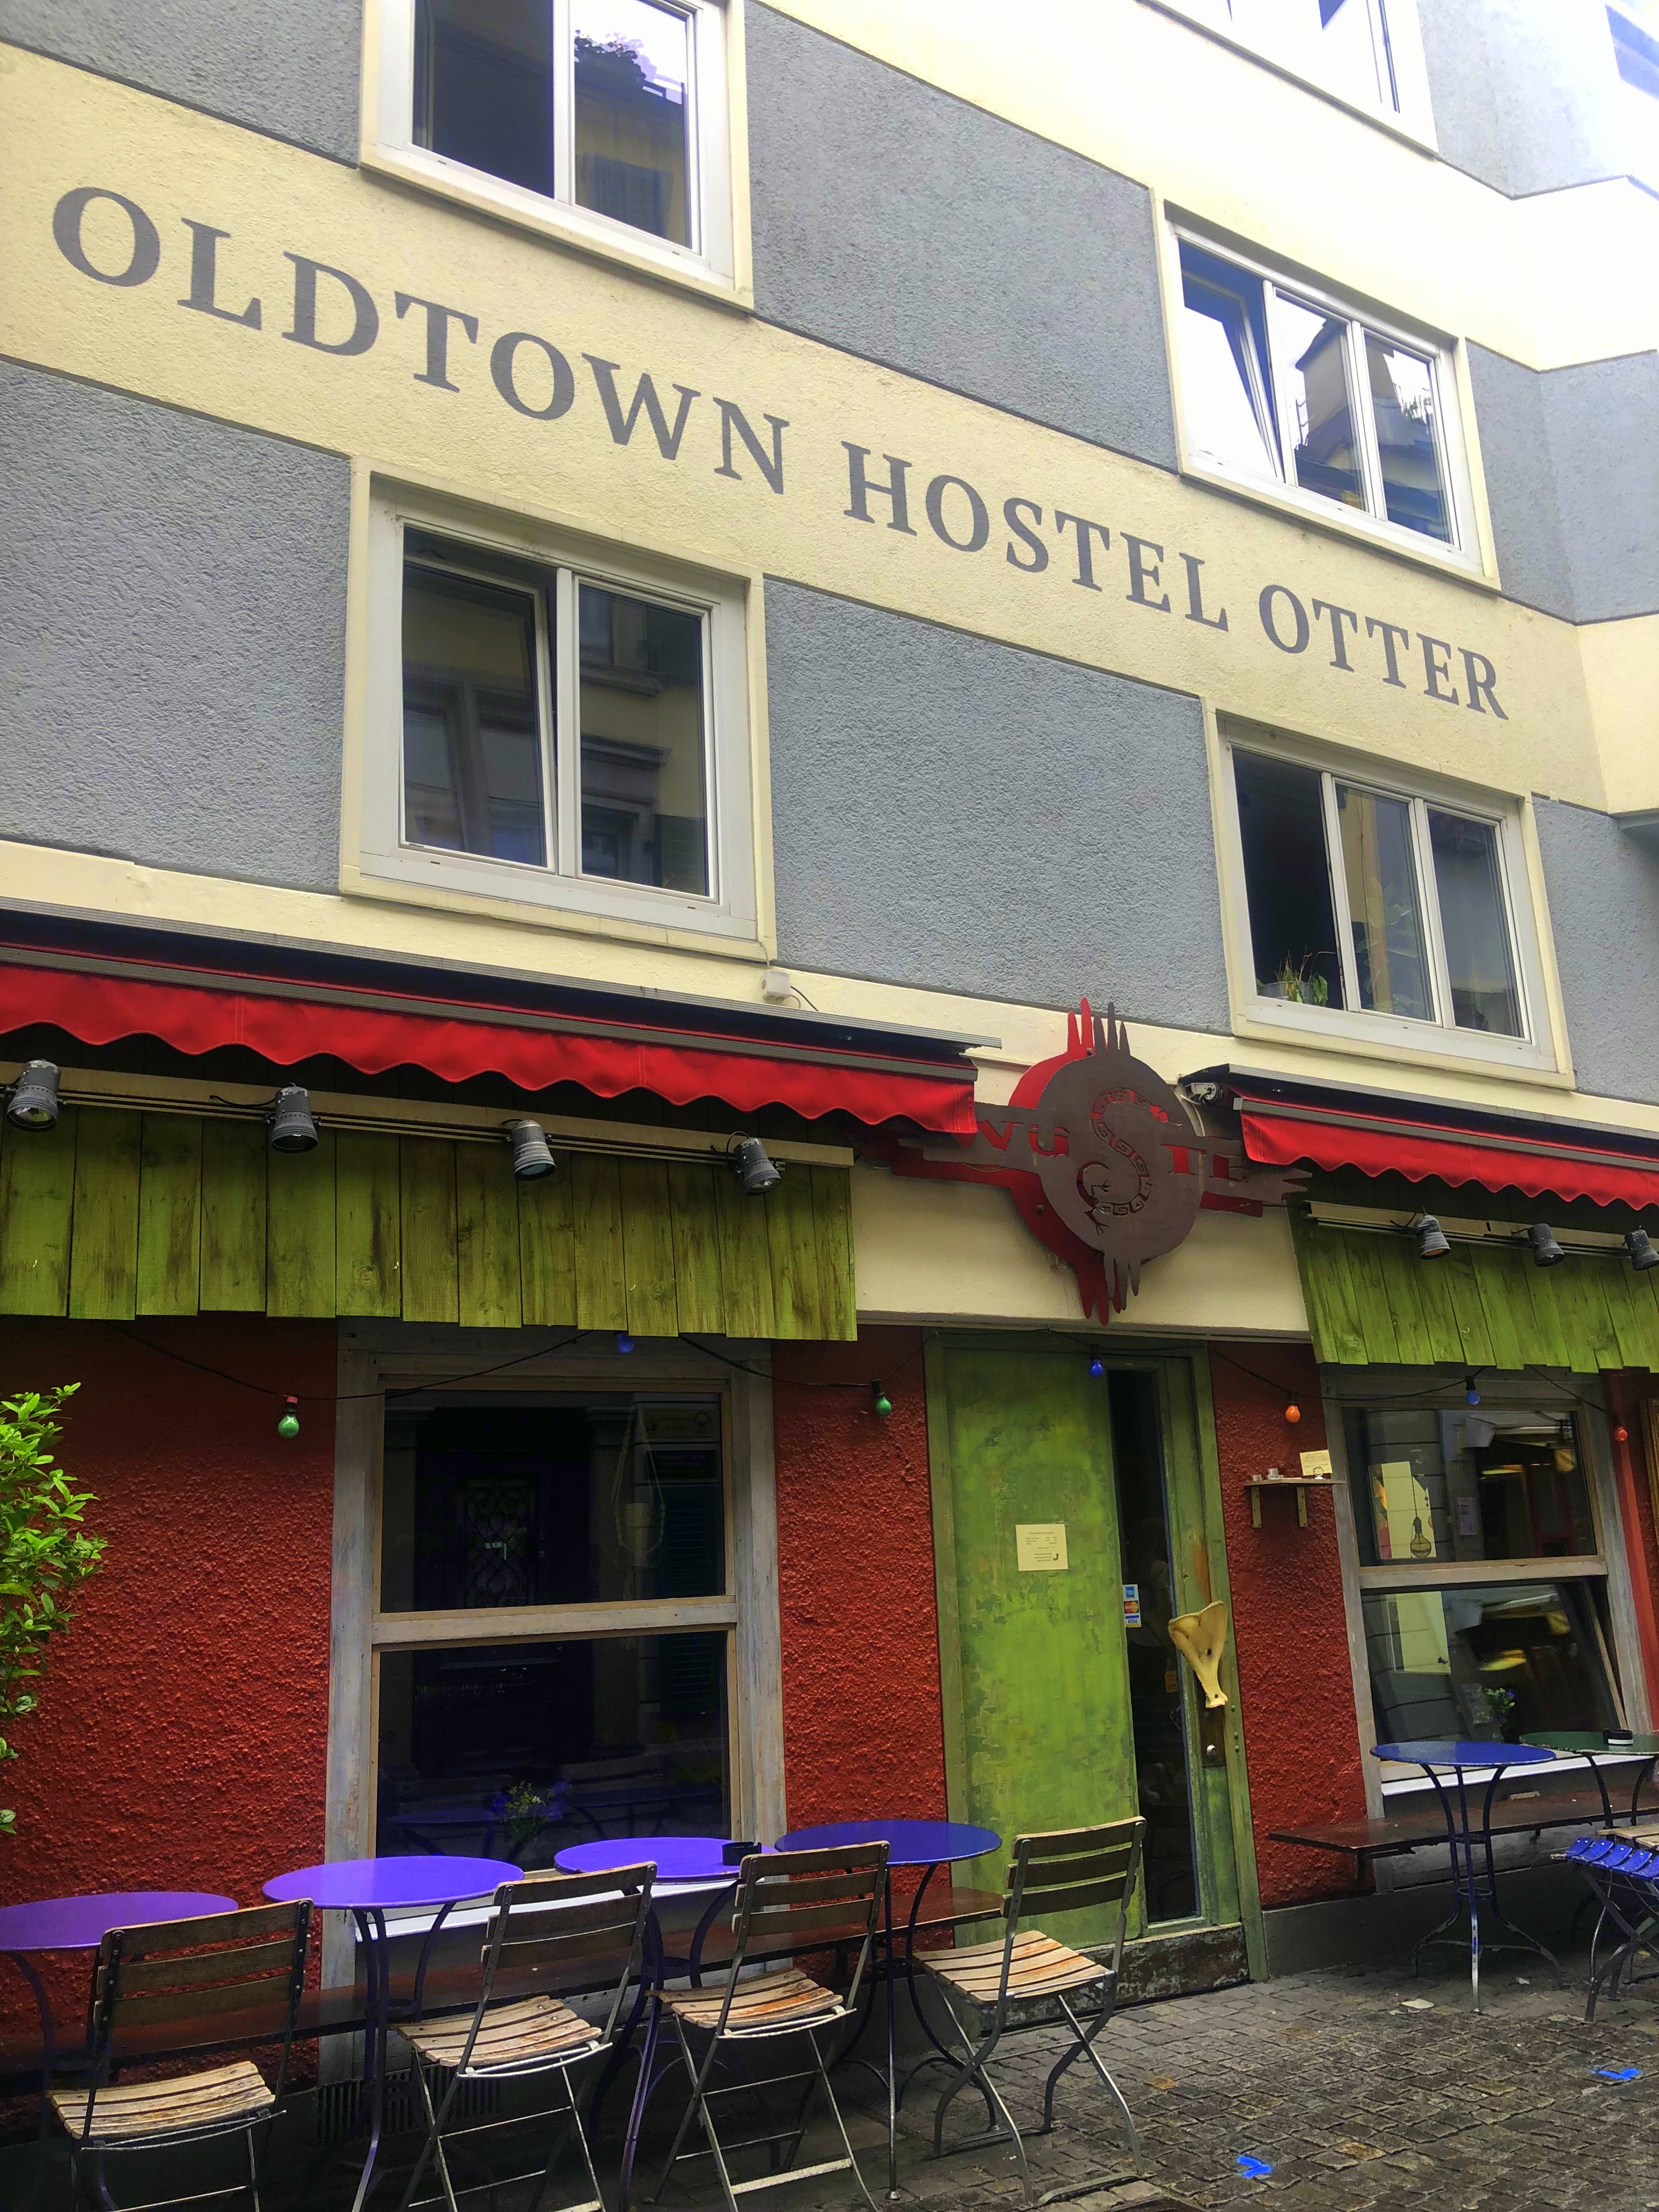 Sugestão de Hostel em Zurique – Oldtown Hostel Otter